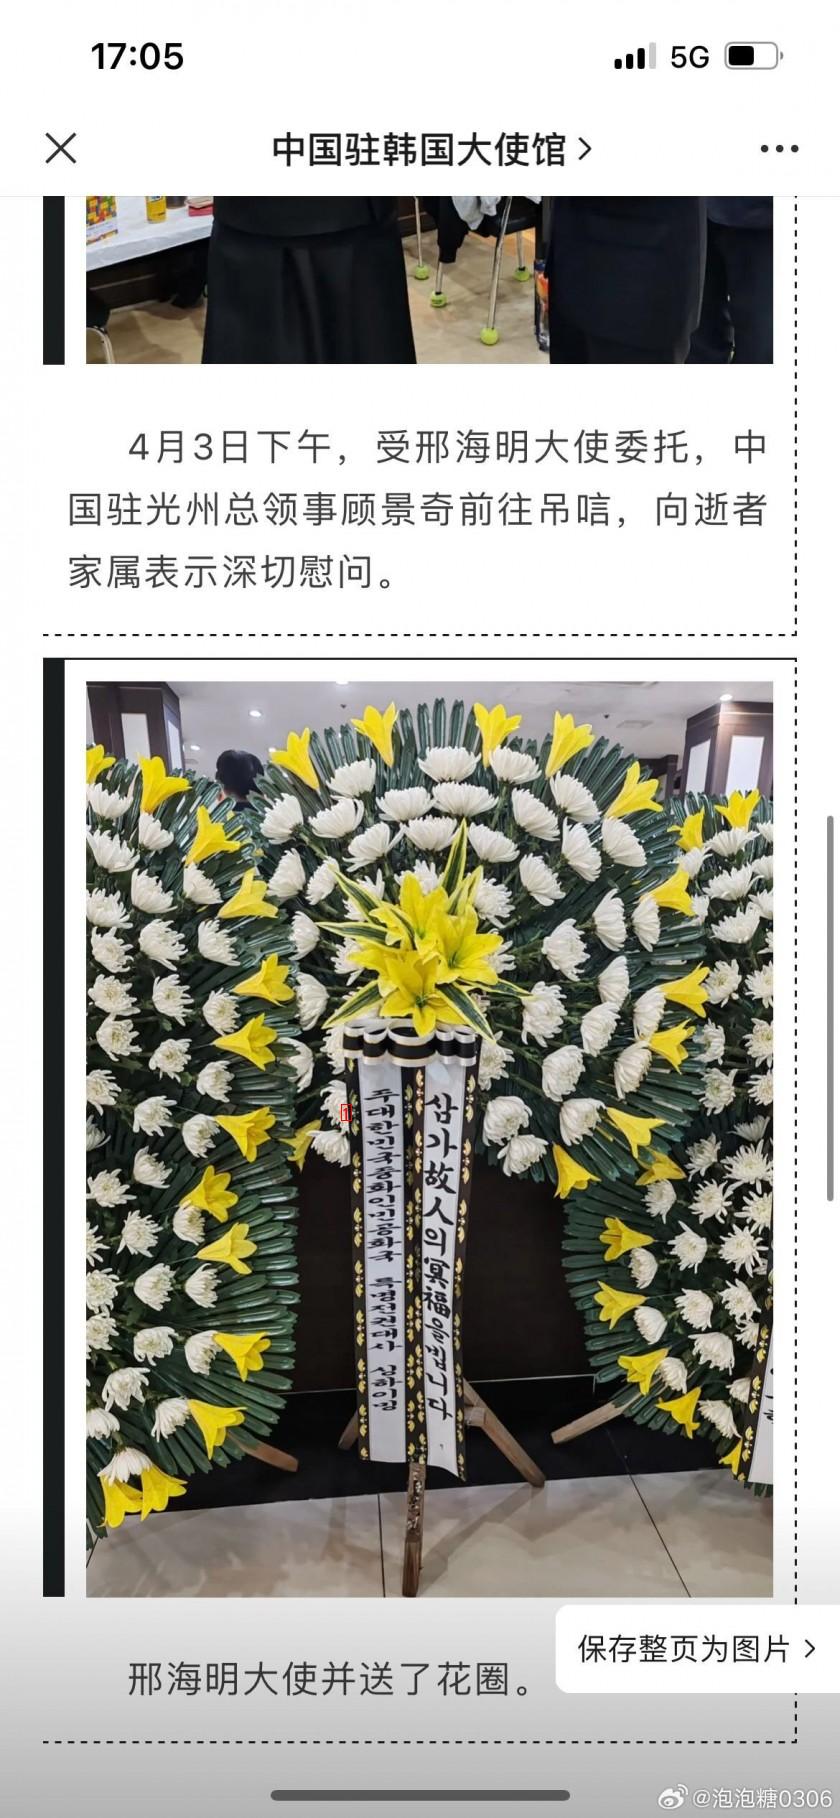 중국에서 푸바오 사육사 모친 장례식장 조문하고 화환 보냄